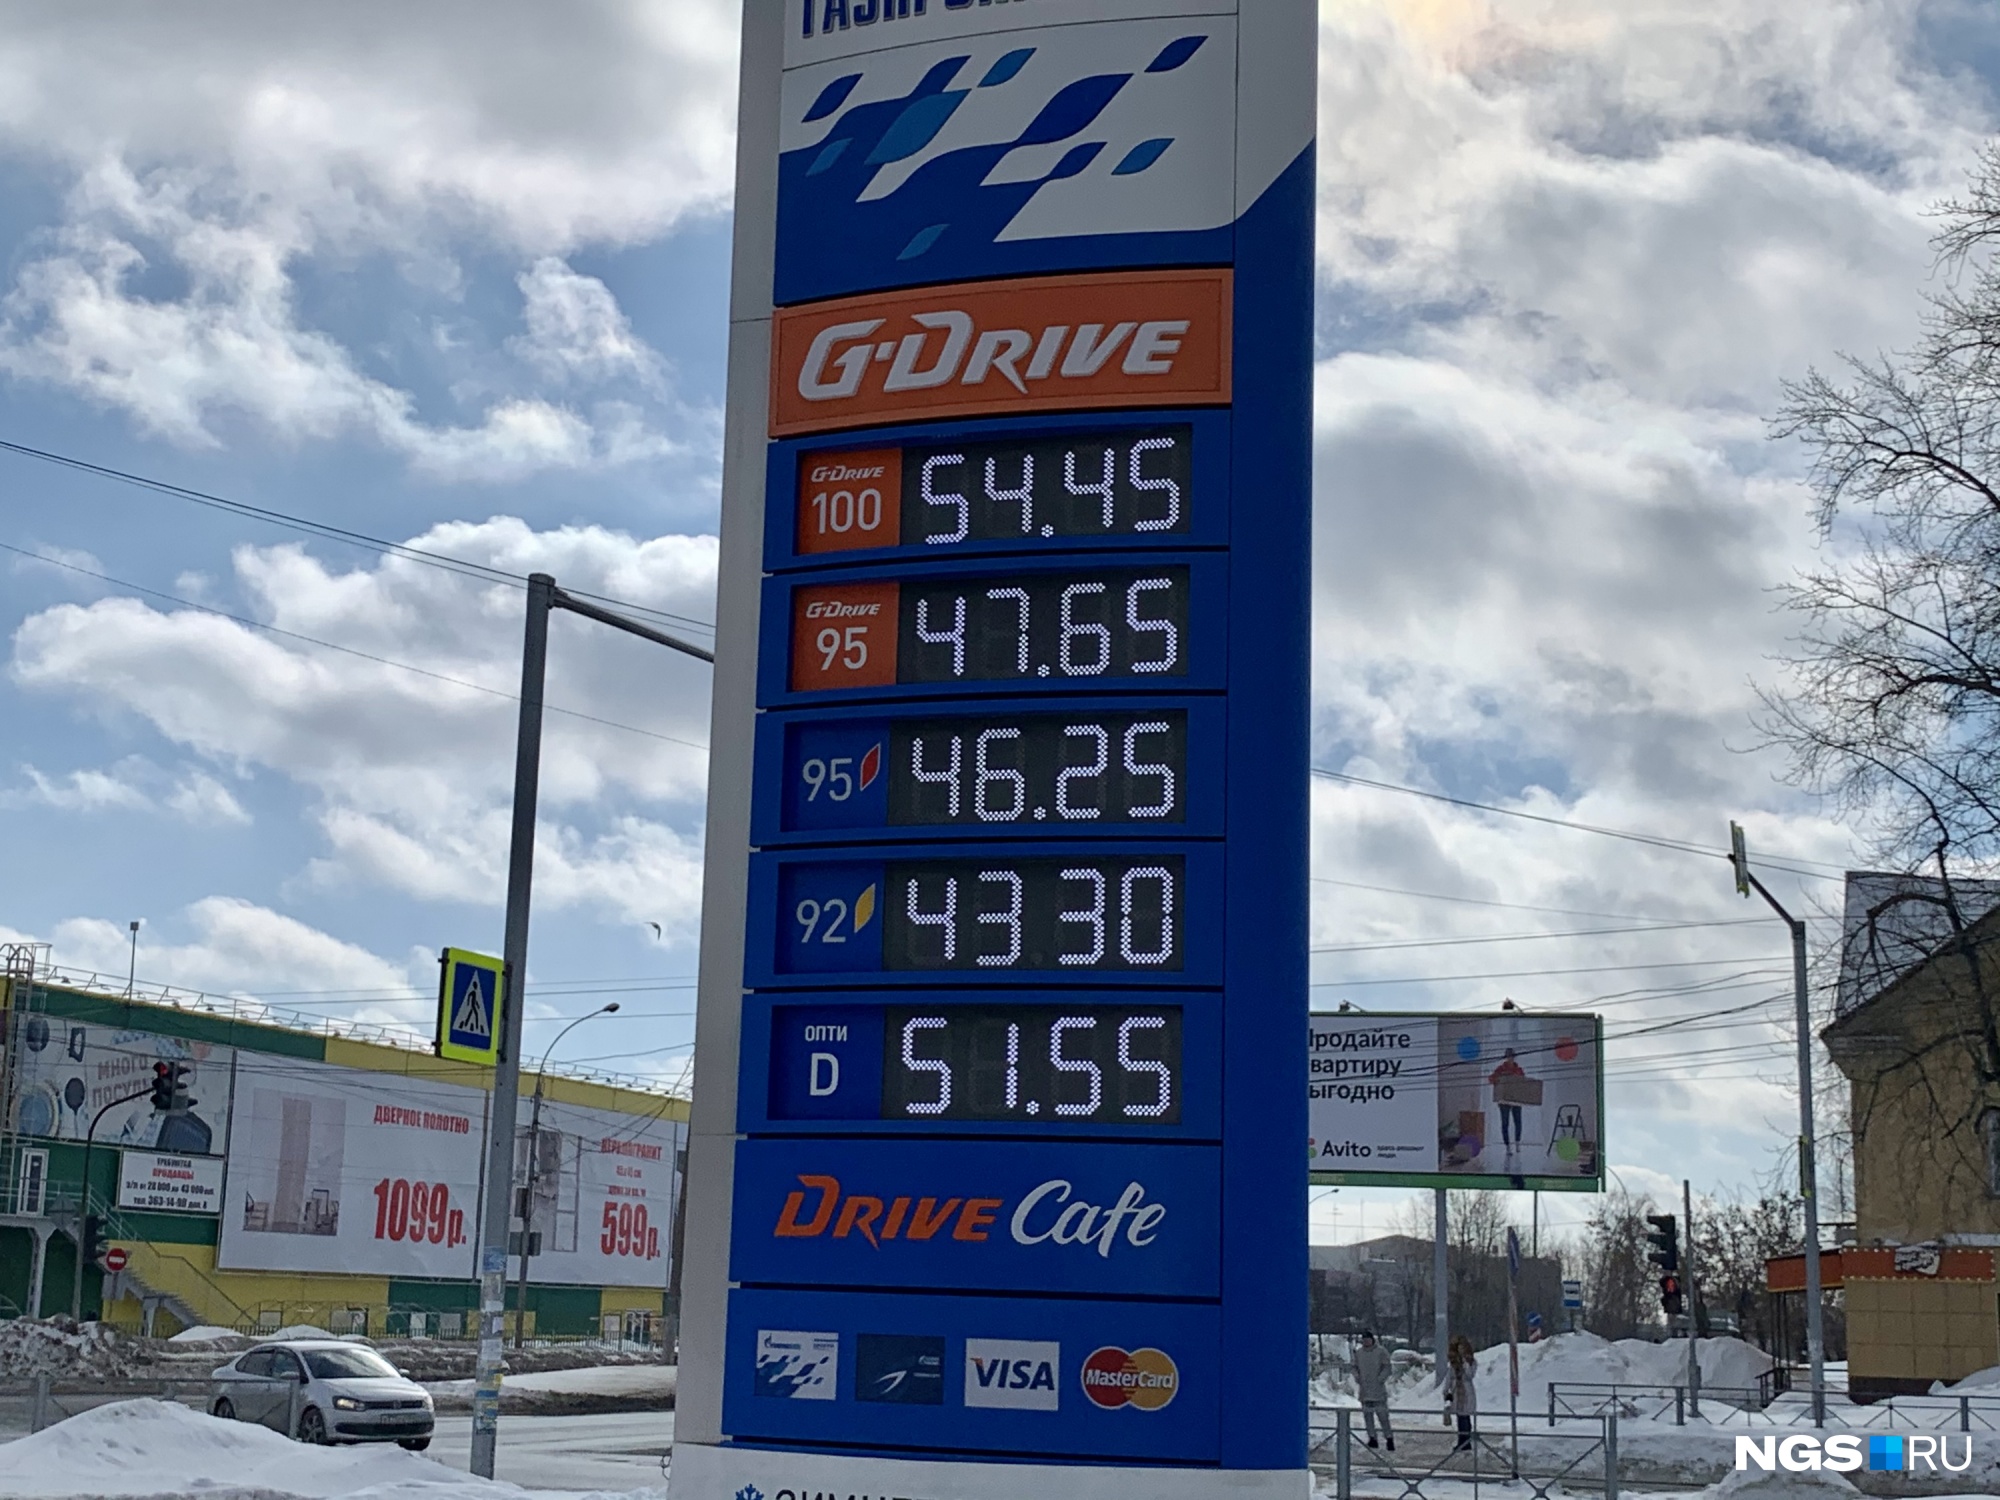 Стоимость бензина в финляндии на сегодня, цена солярки (дт)